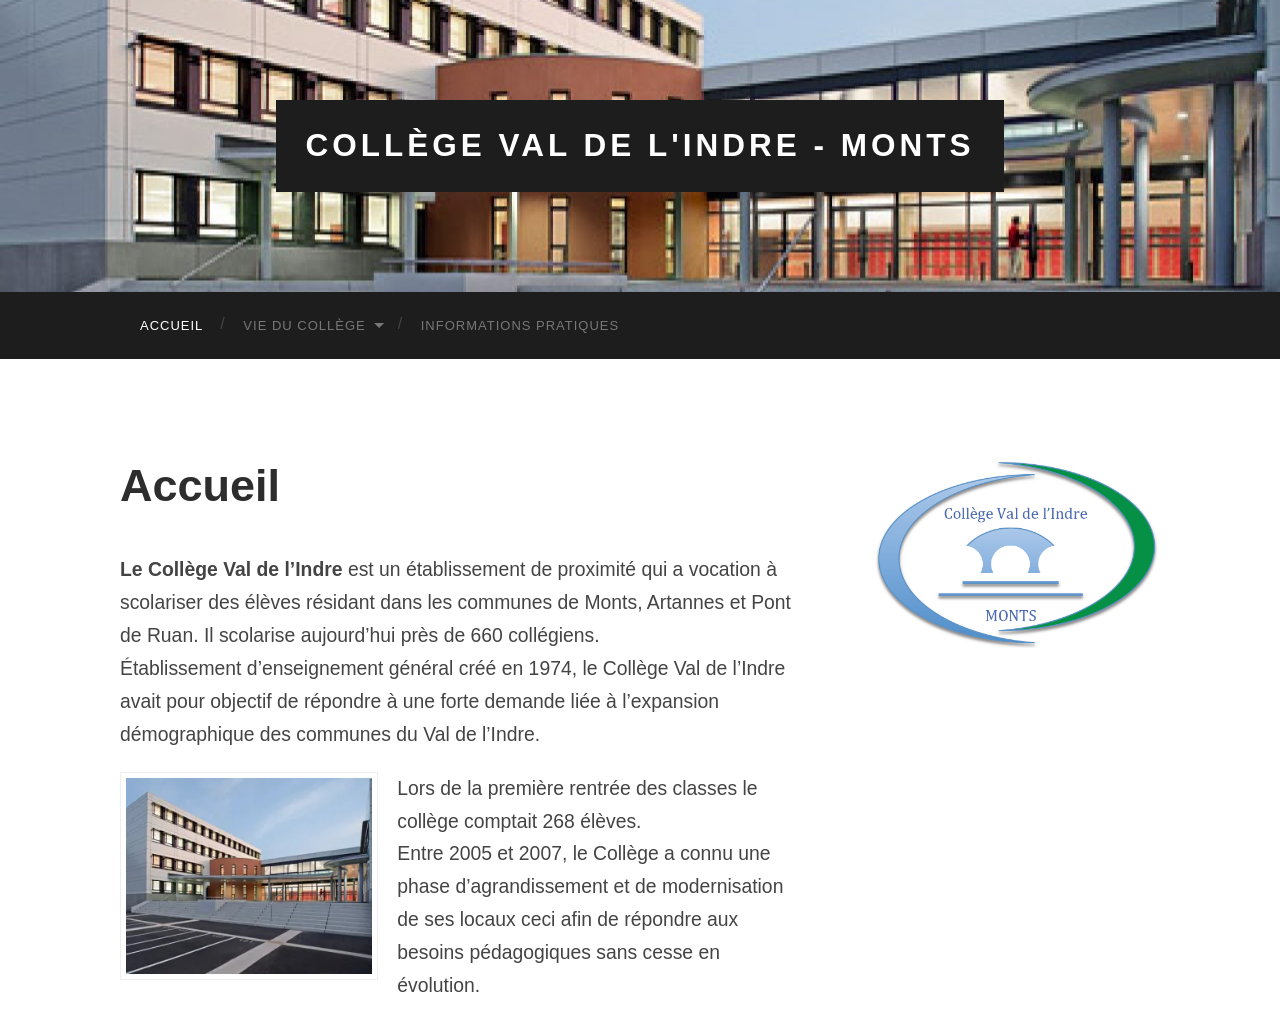 www.collegevaldelindre.fr